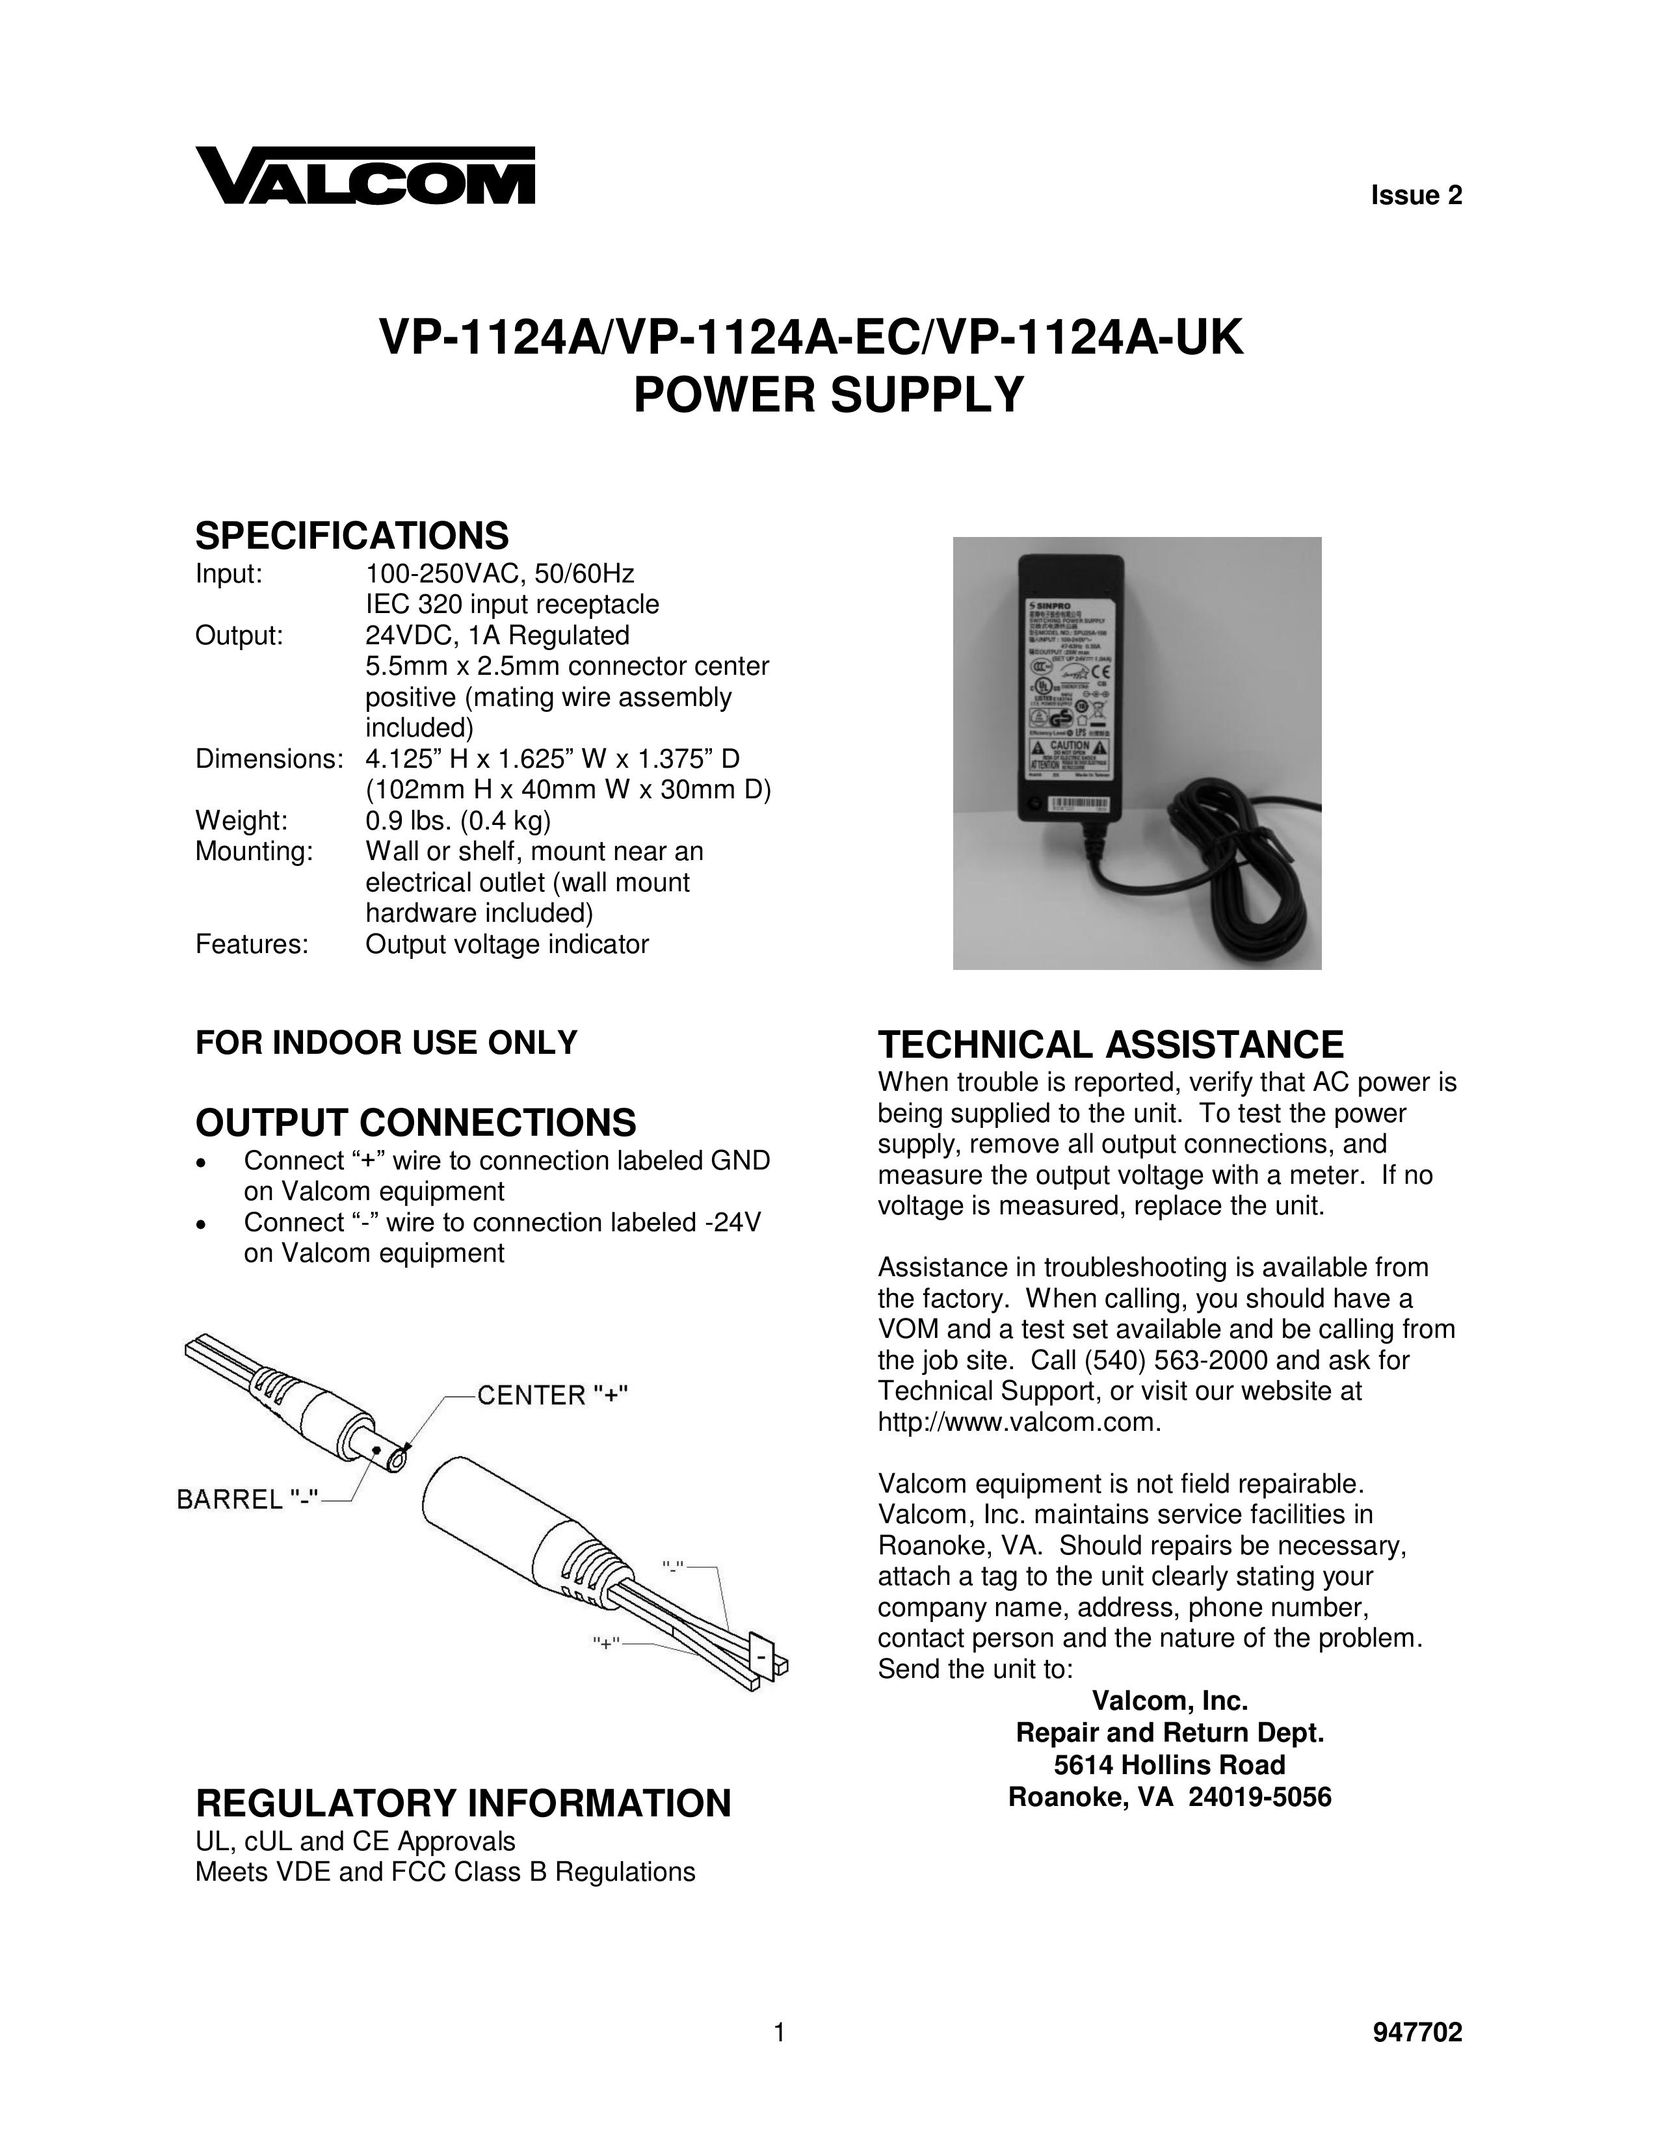 Valcom VP-1124A-EC Power Supply User Manual